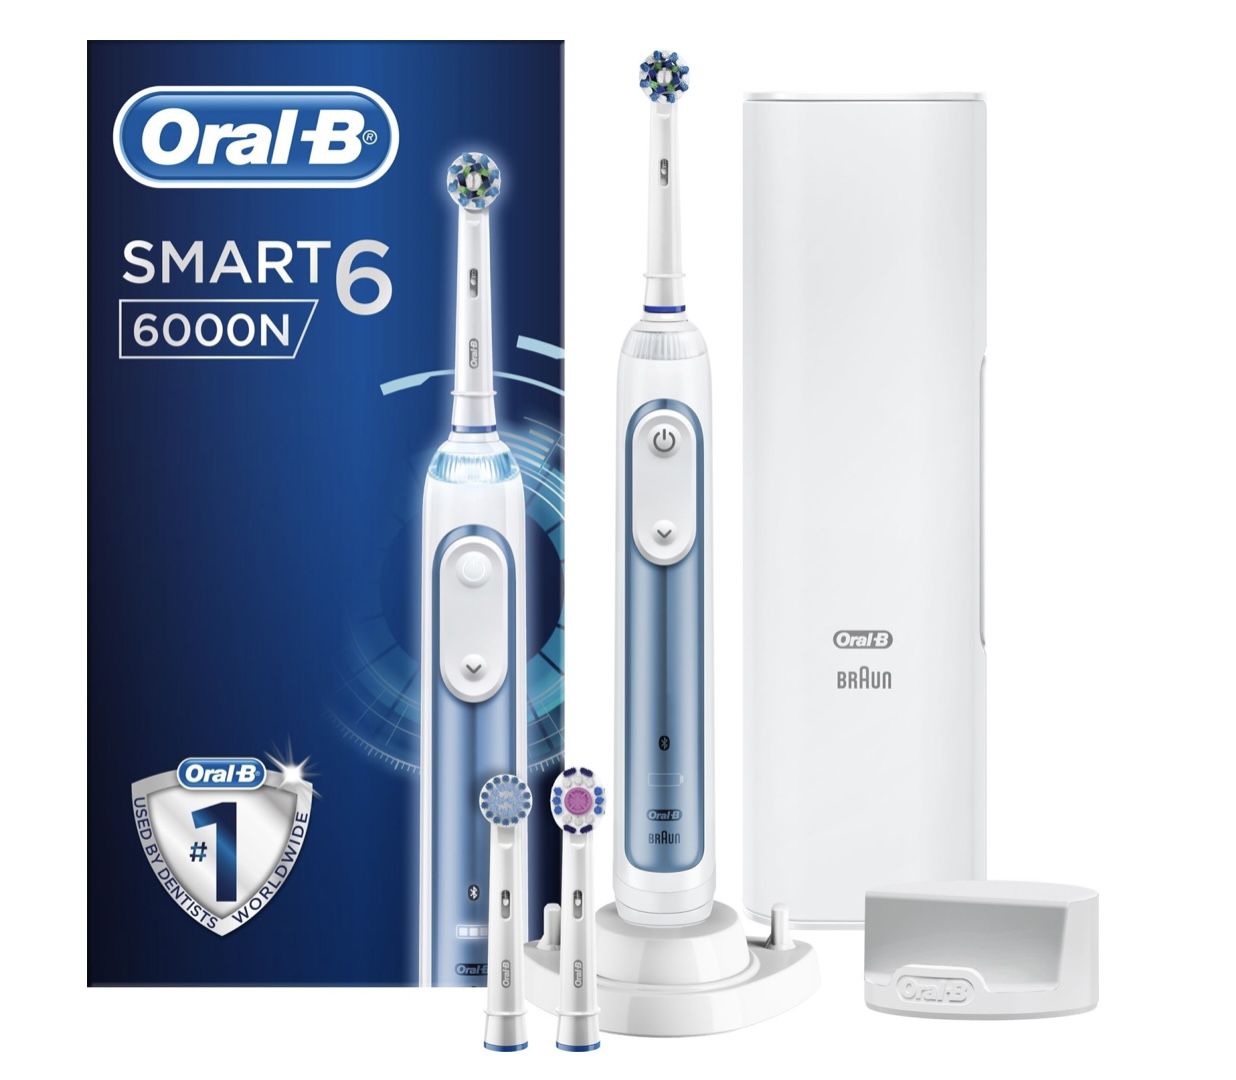 Oral B Smart 6 6000N Elektrische Zahnbürste in Weiß/Blau für 74,99€ (statt 85€)